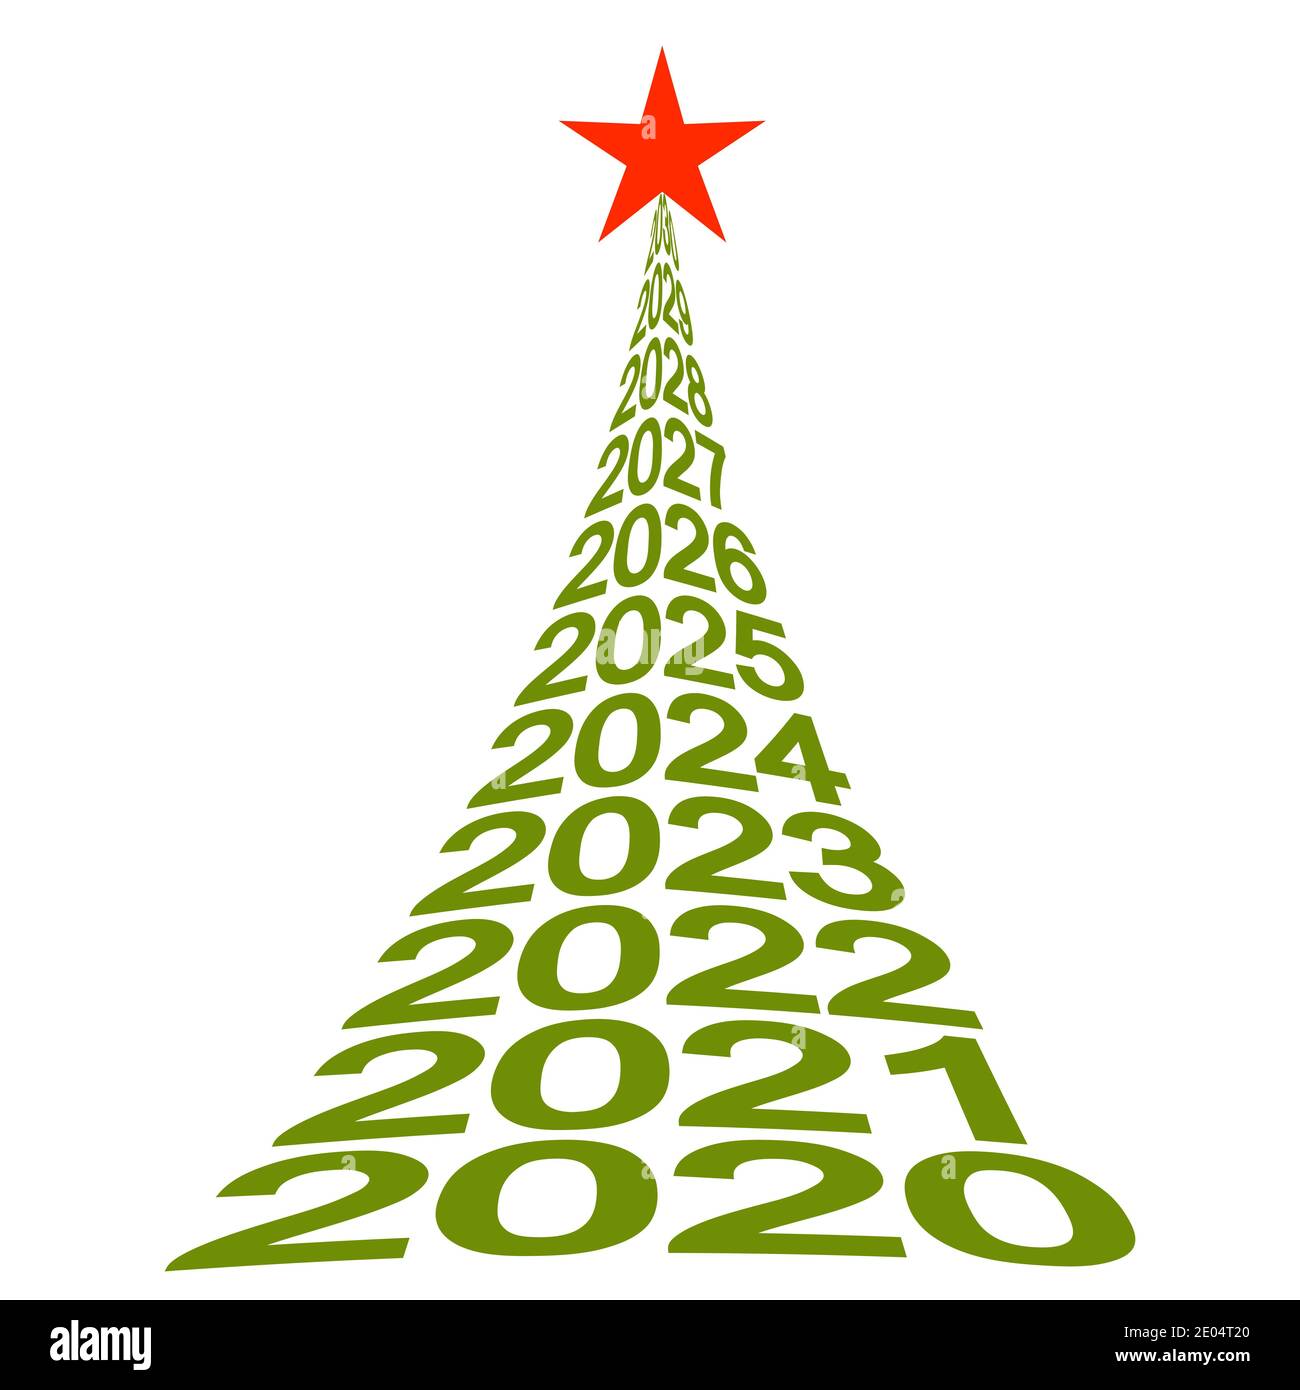 Neujahr Baumnummern 2020, Vektor-Weihnachtsbaum Symbol für neues Leben, Wohlbefinden und eine schöne Zukunft Stock Vektor